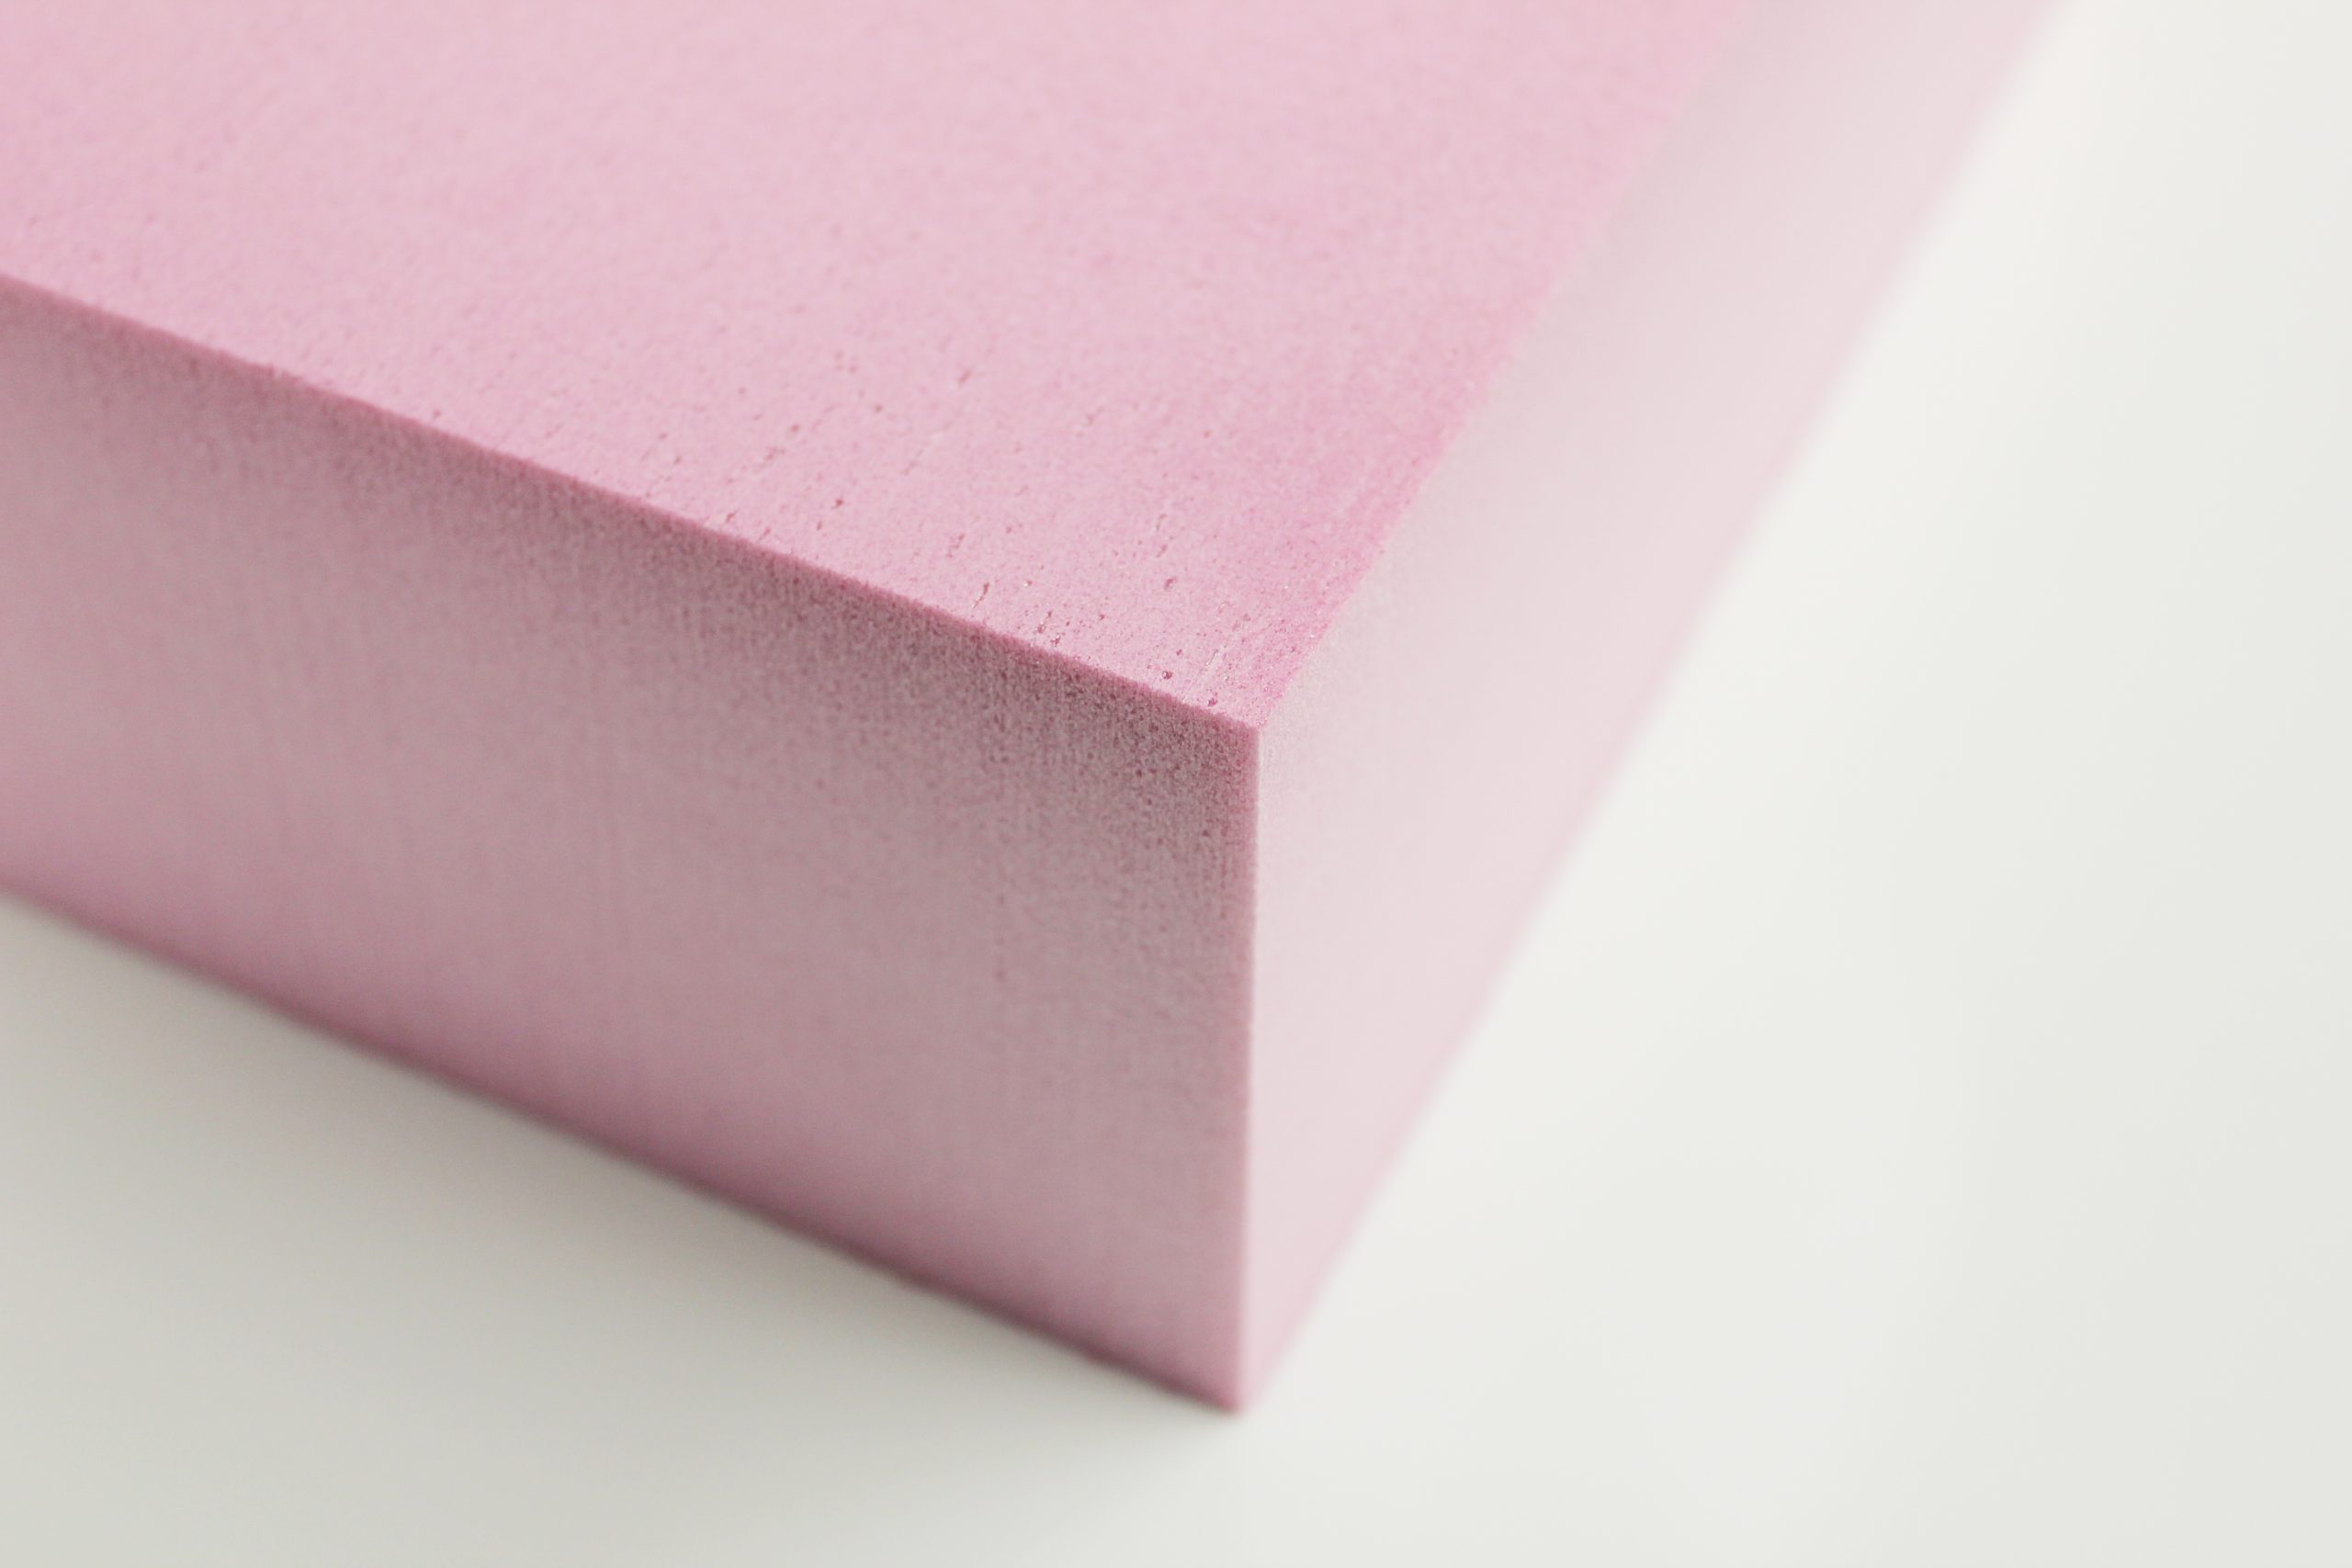 Image of the rigid-foam material.